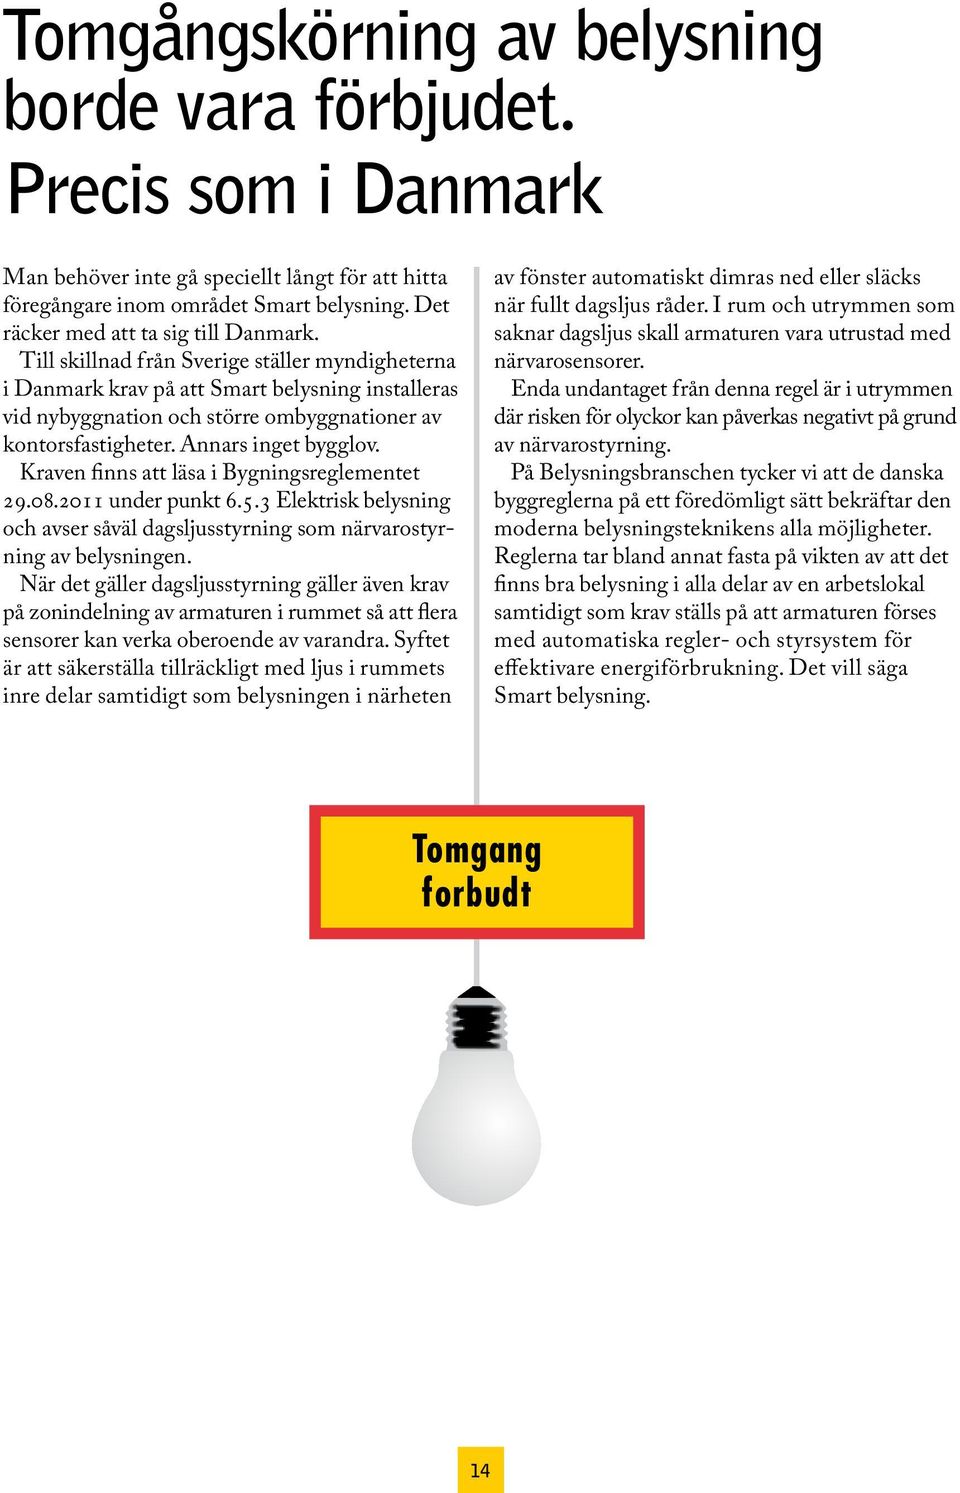 Till skillnad från Sverige ställer myndigheterna i Danmark krav på att Smart belysning installeras vid nybyggnation och större ombyggnationer av kontorsfastigheter. Annars inget bygglov.